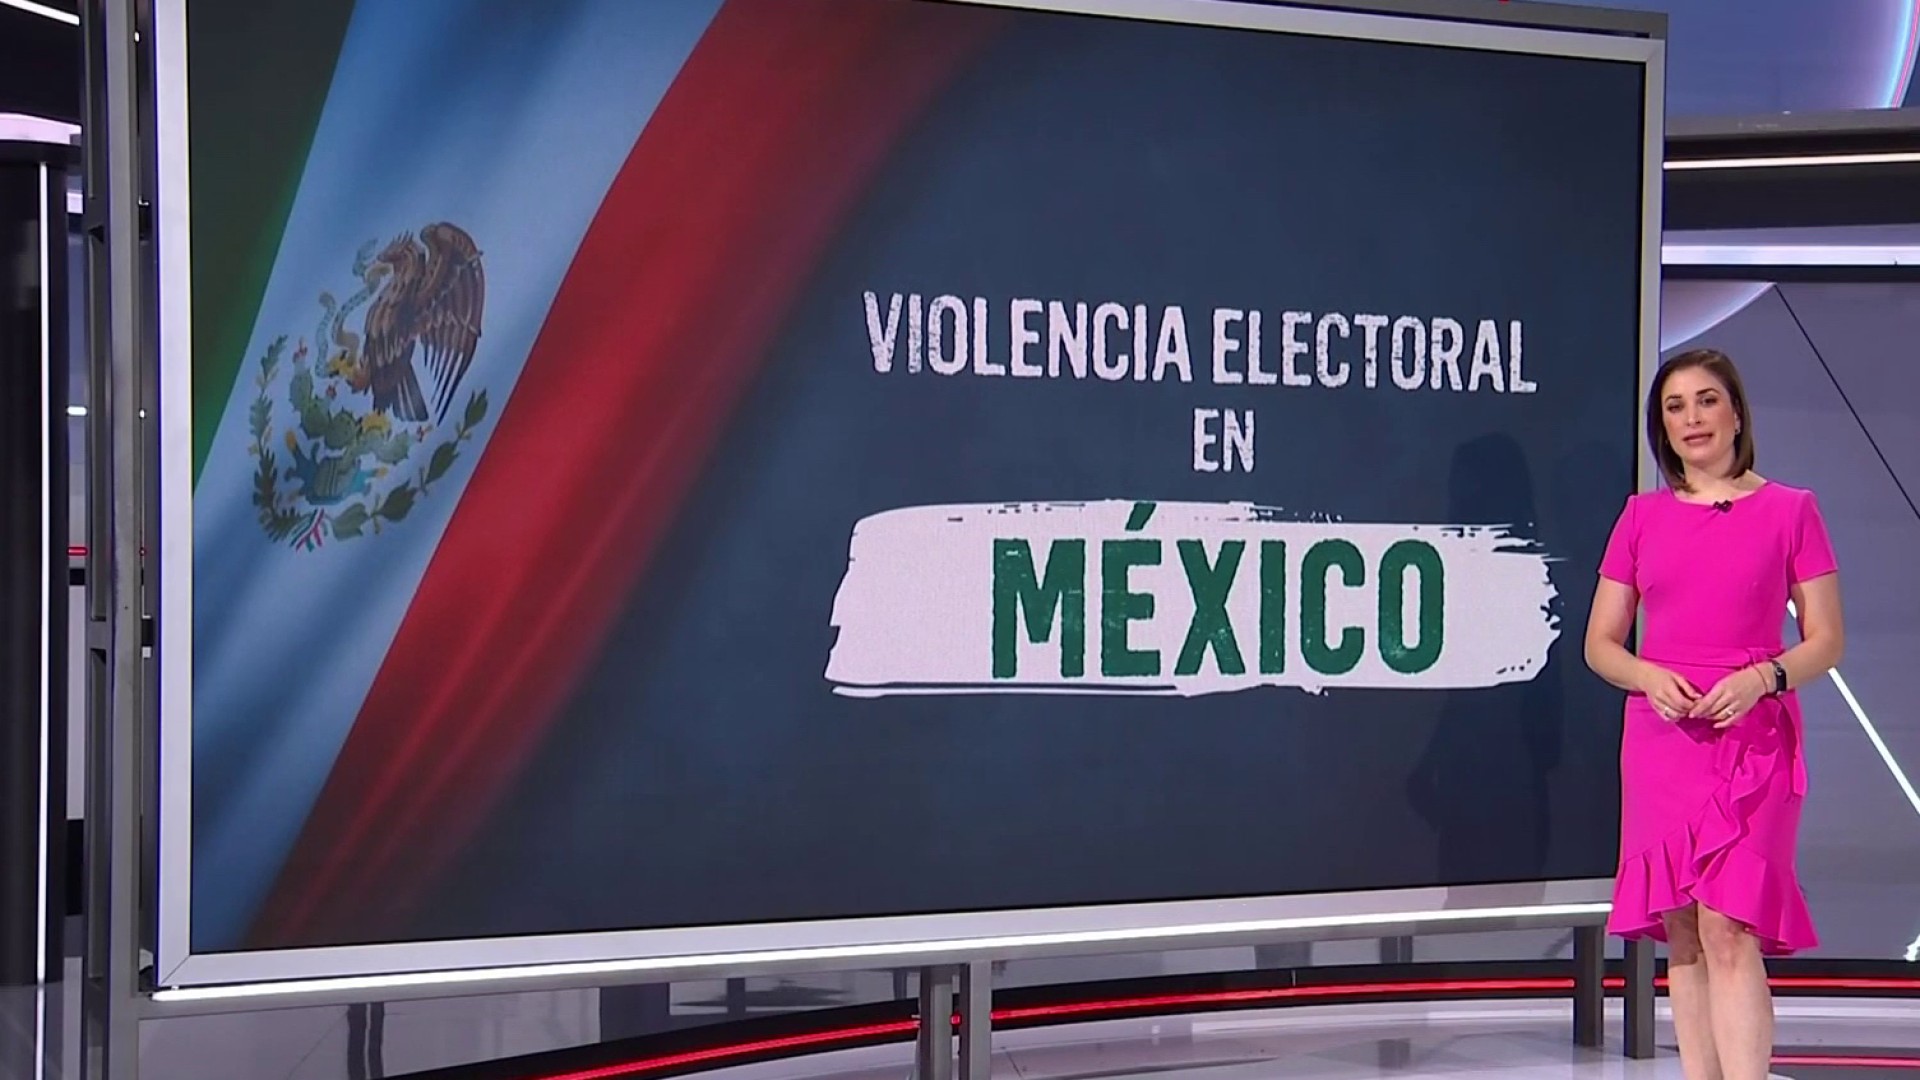 Violencia Electoral en Mexico a meses de las elecciones. 